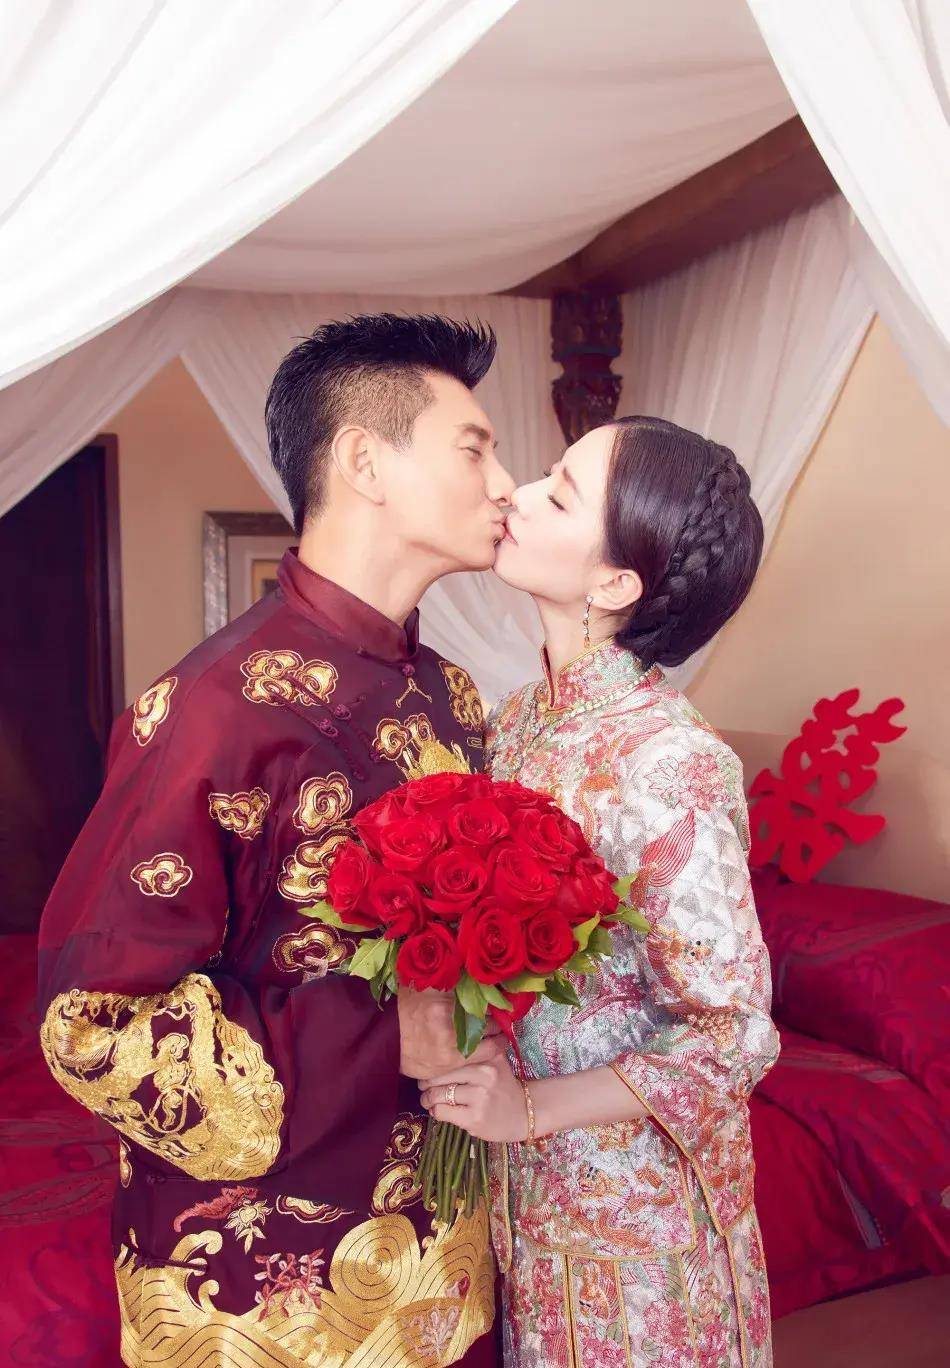 再说到吴奇隆和刘诗诗早已结婚生子,可是近期总是传闻他们婚变,希望这